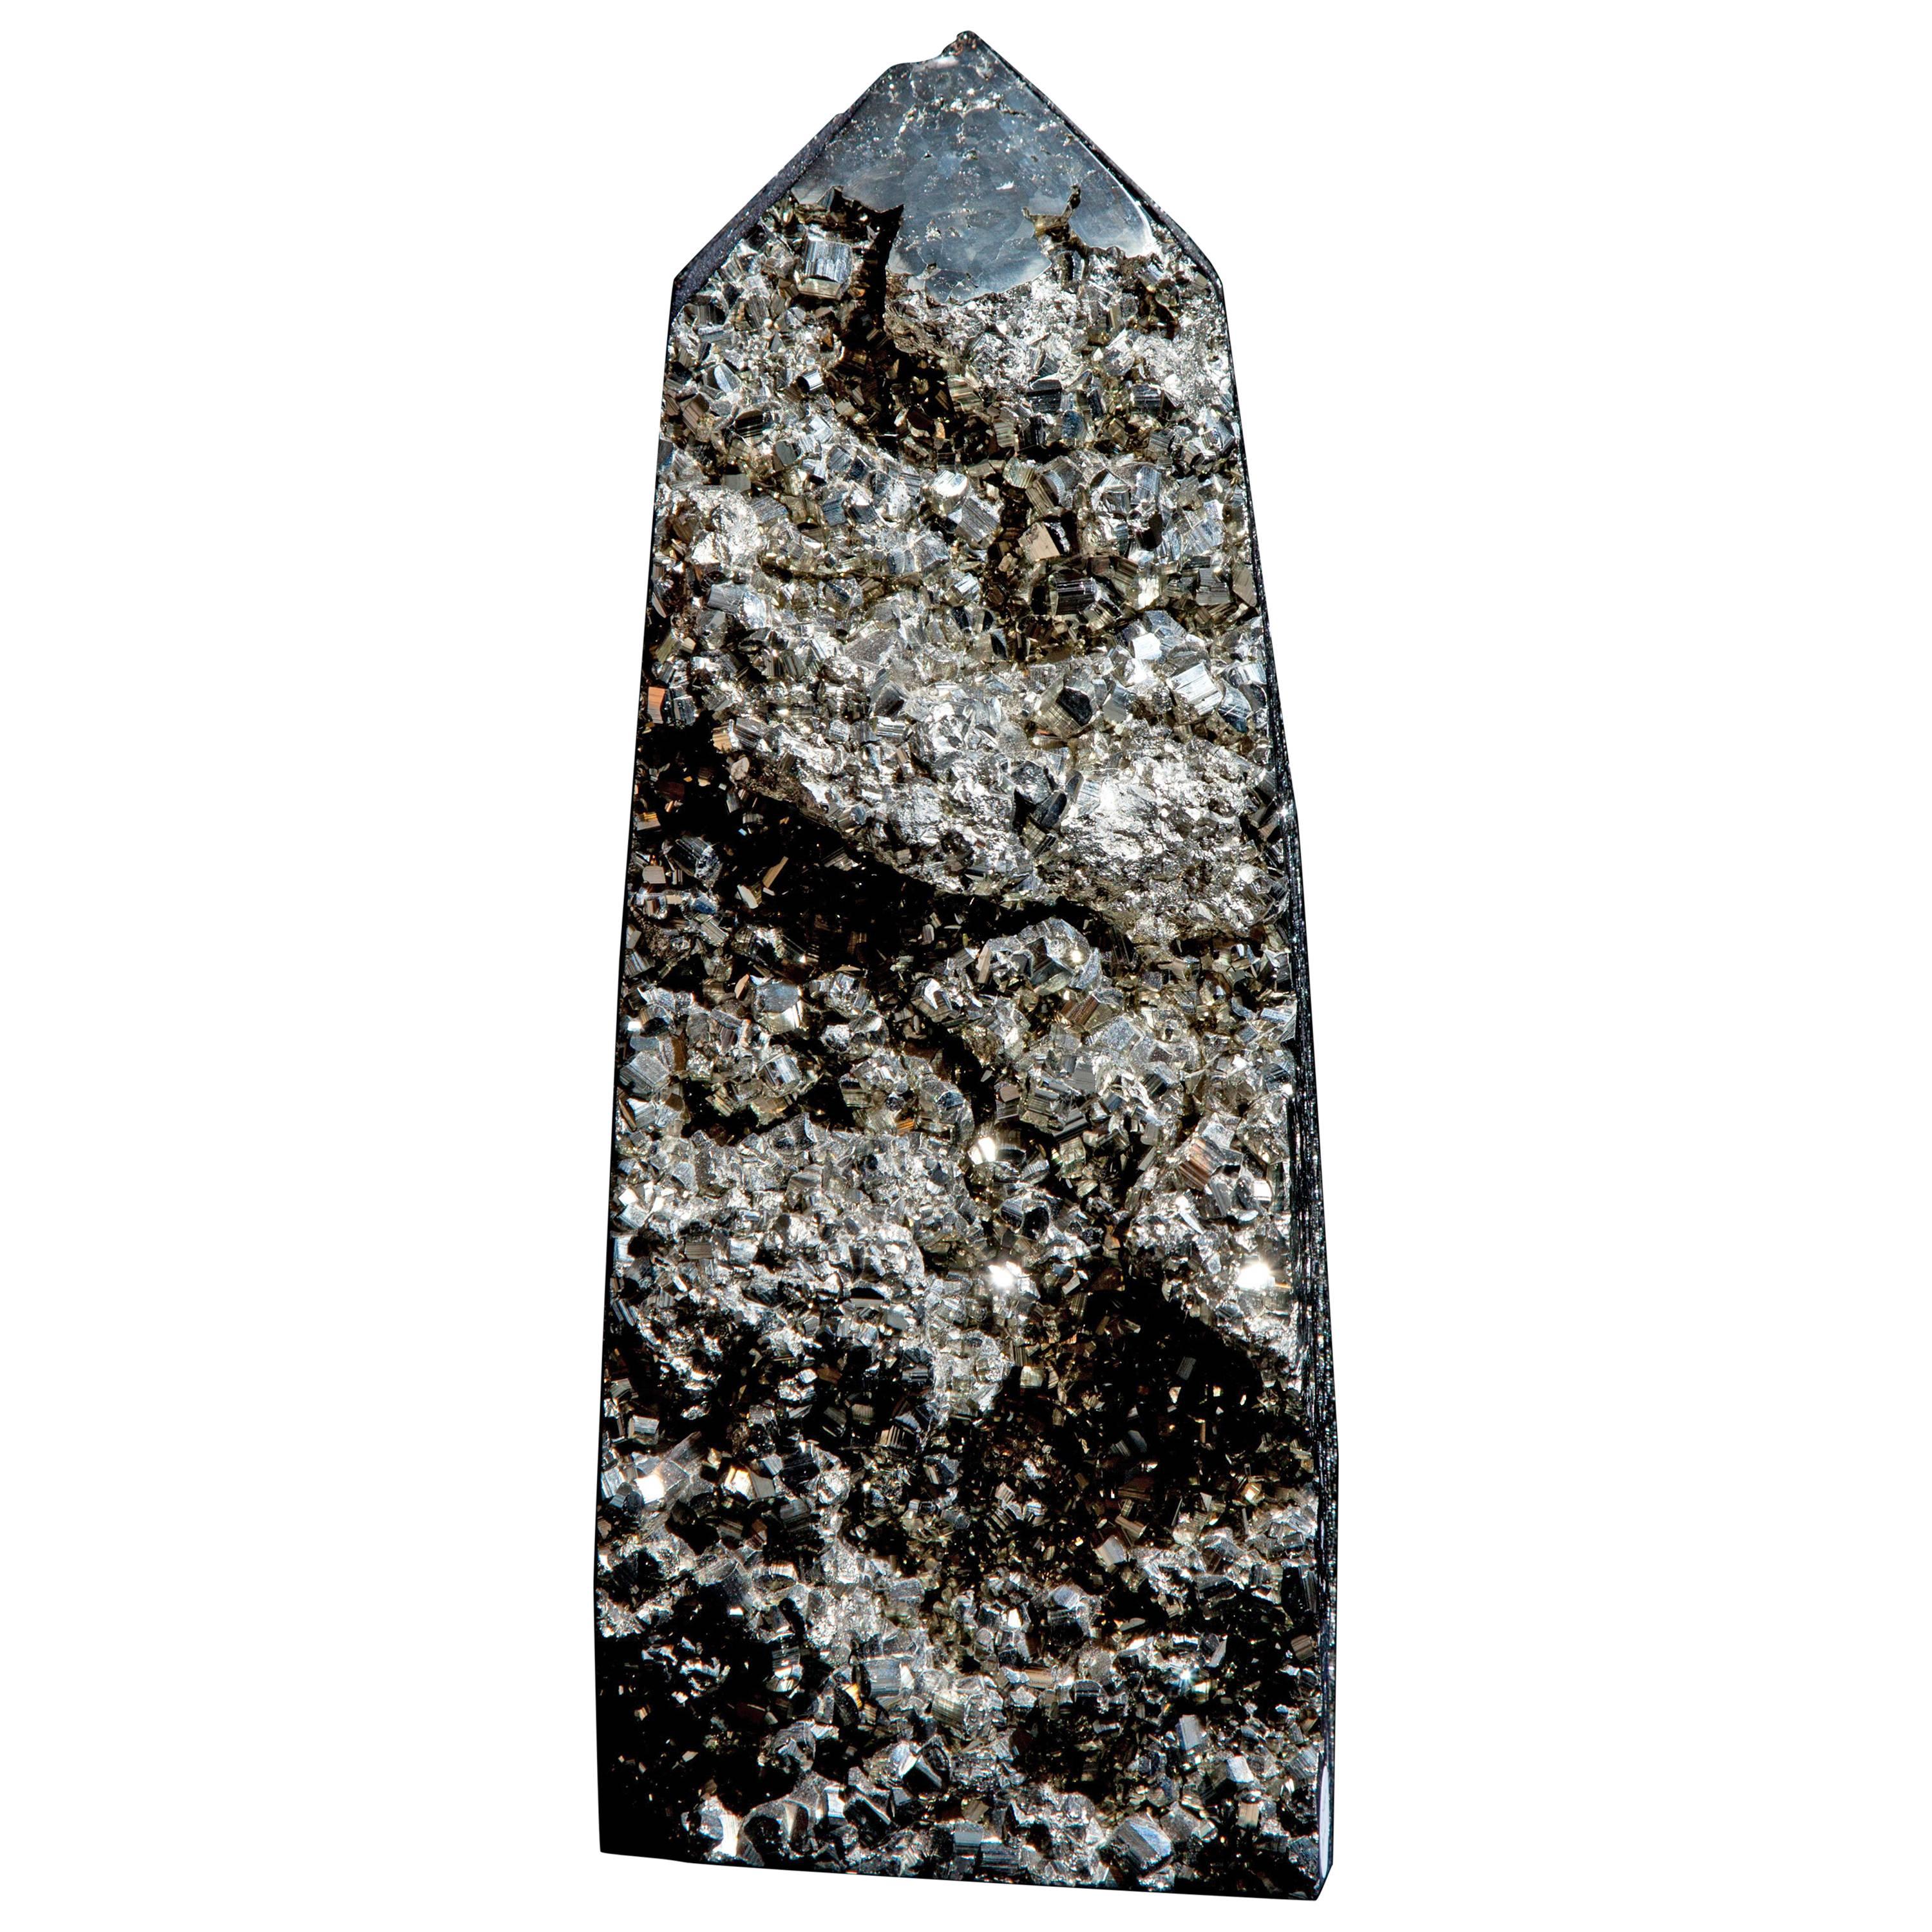 Freestanding Pyrite Mineral, Peru.